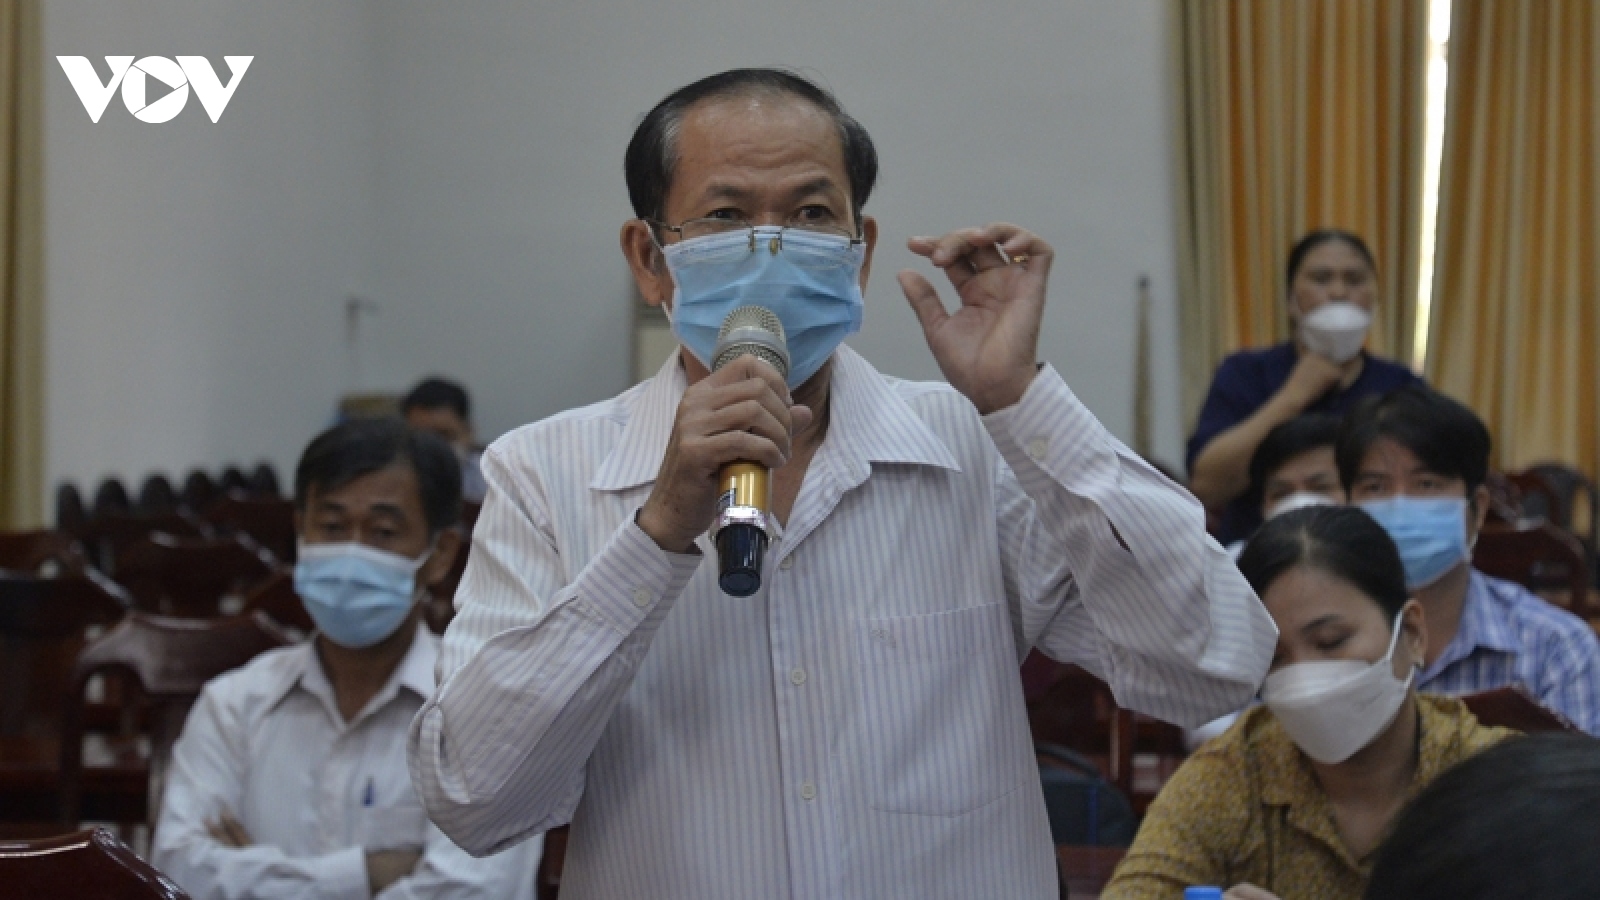 Cử tri Tây Ninh: Công tác chống dịch ở địa phương còn lúng túng 